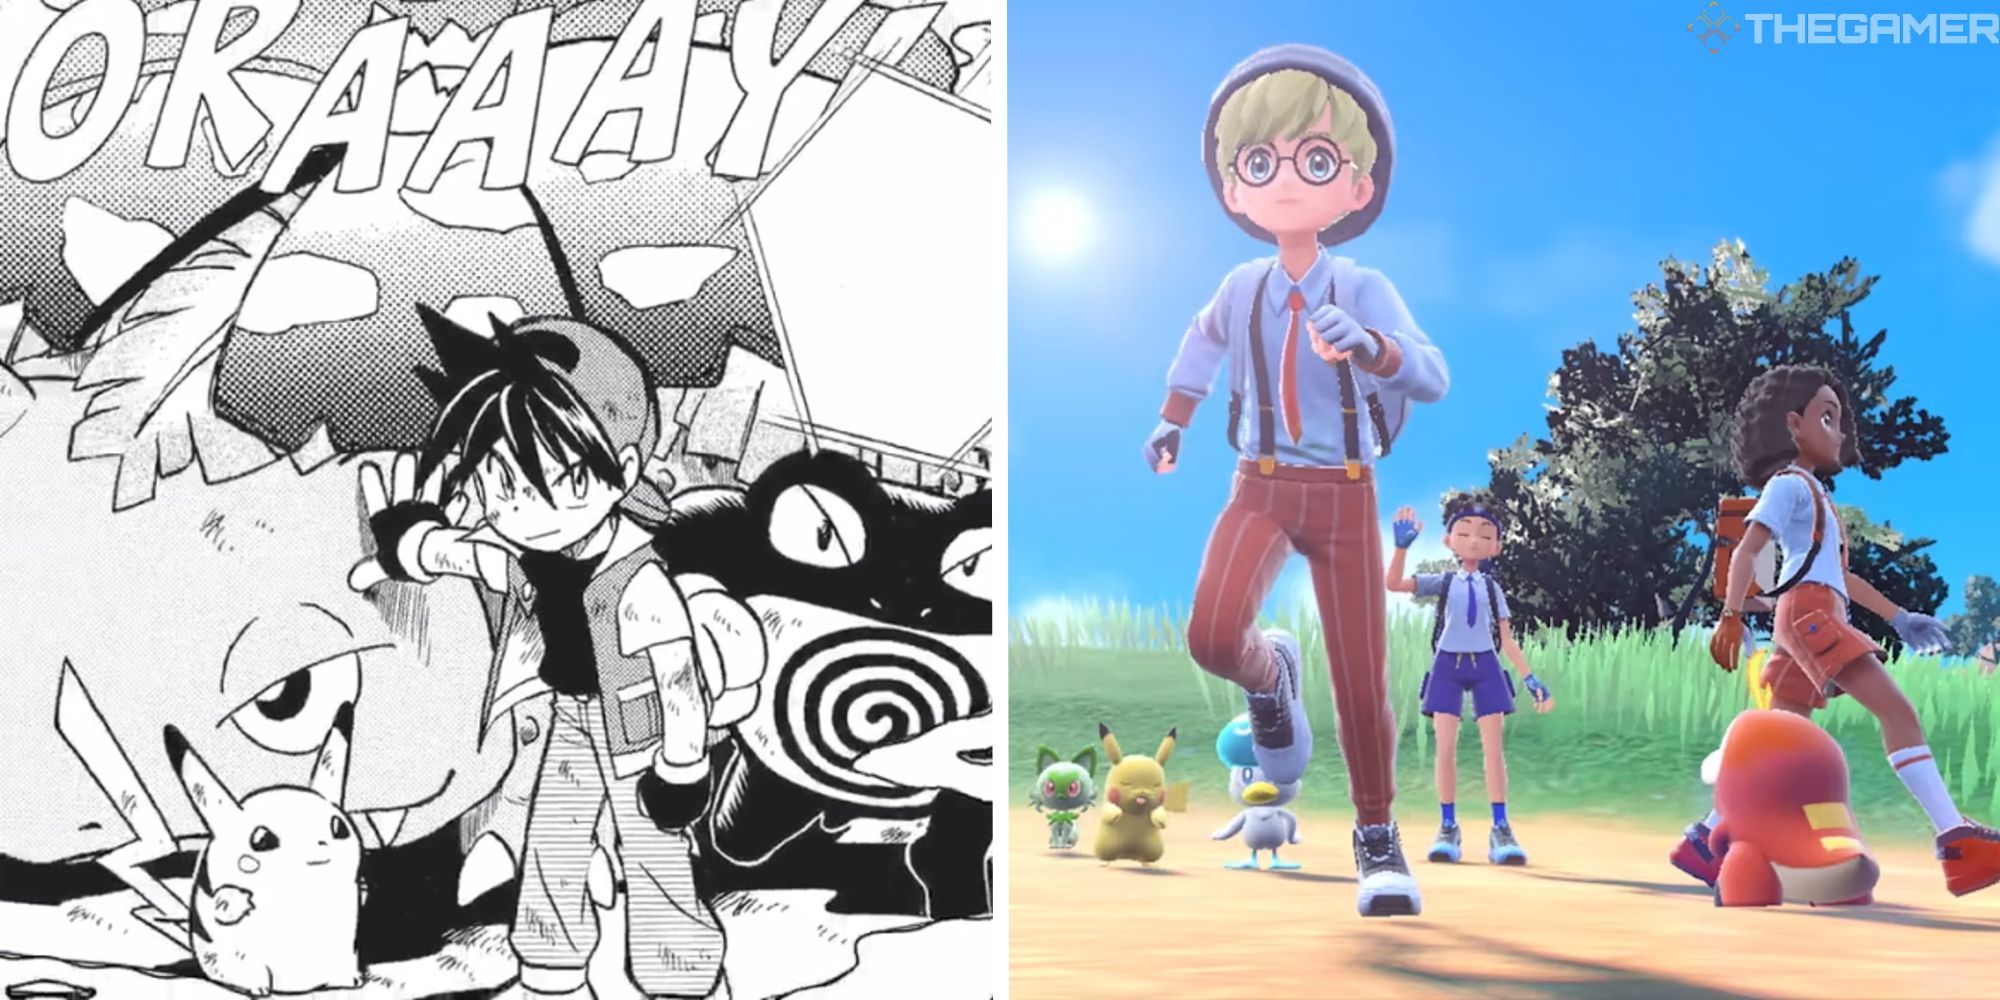 split image showing pokemon manga vs game